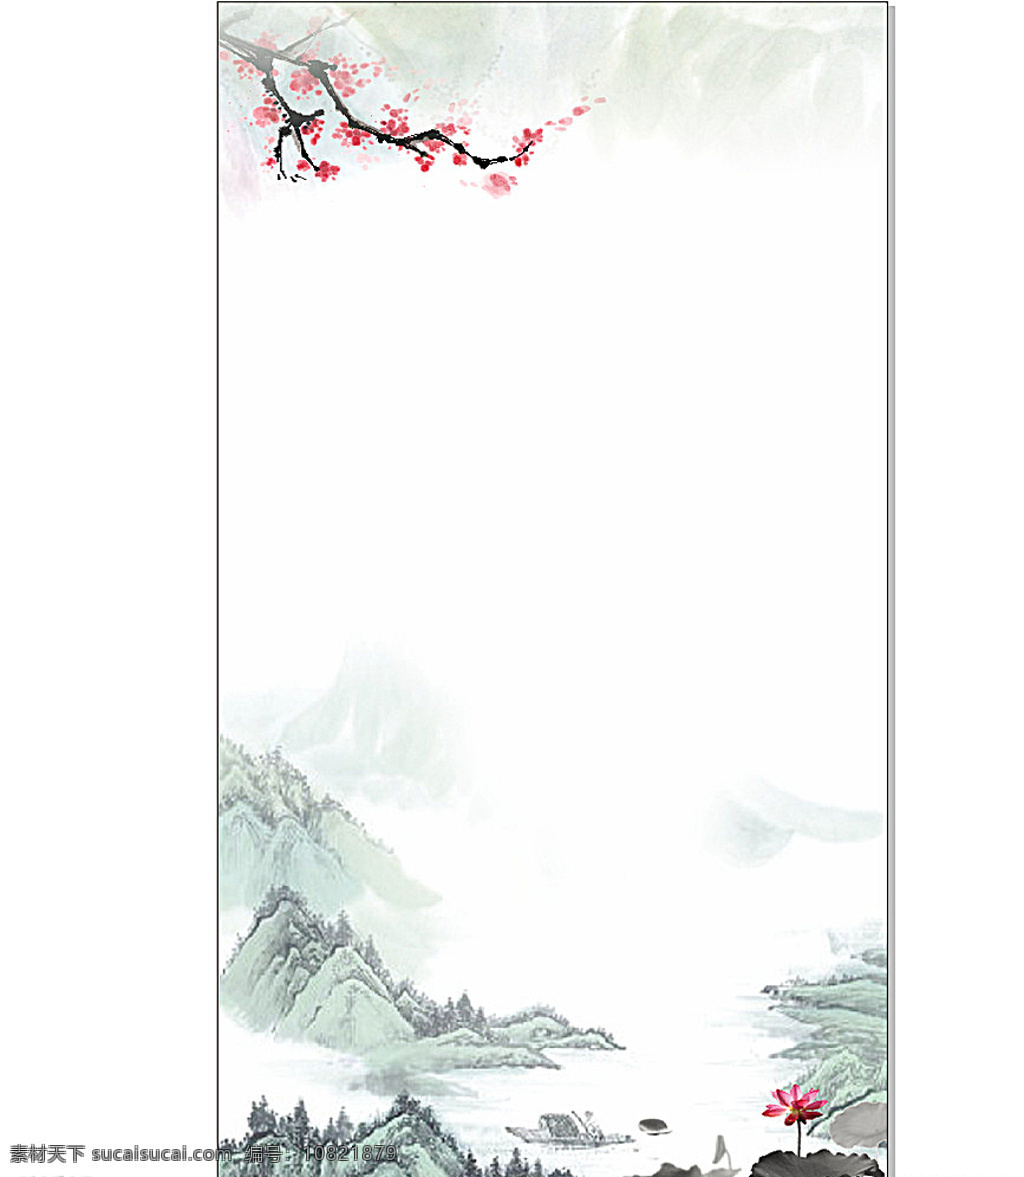 中国 山水画 背景 中国山水画 山水画背景 中国风 中国文化 梅花 白色